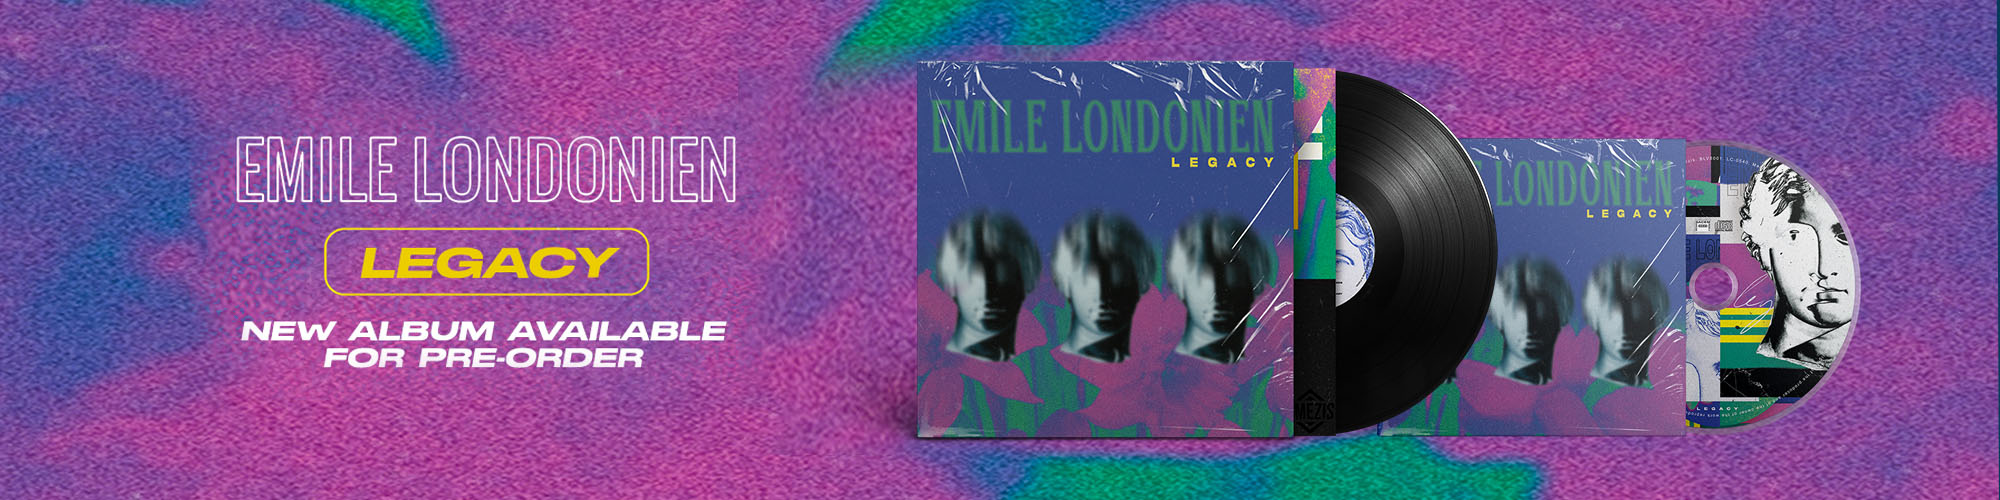 Emile Londonien nouvel album Legacy